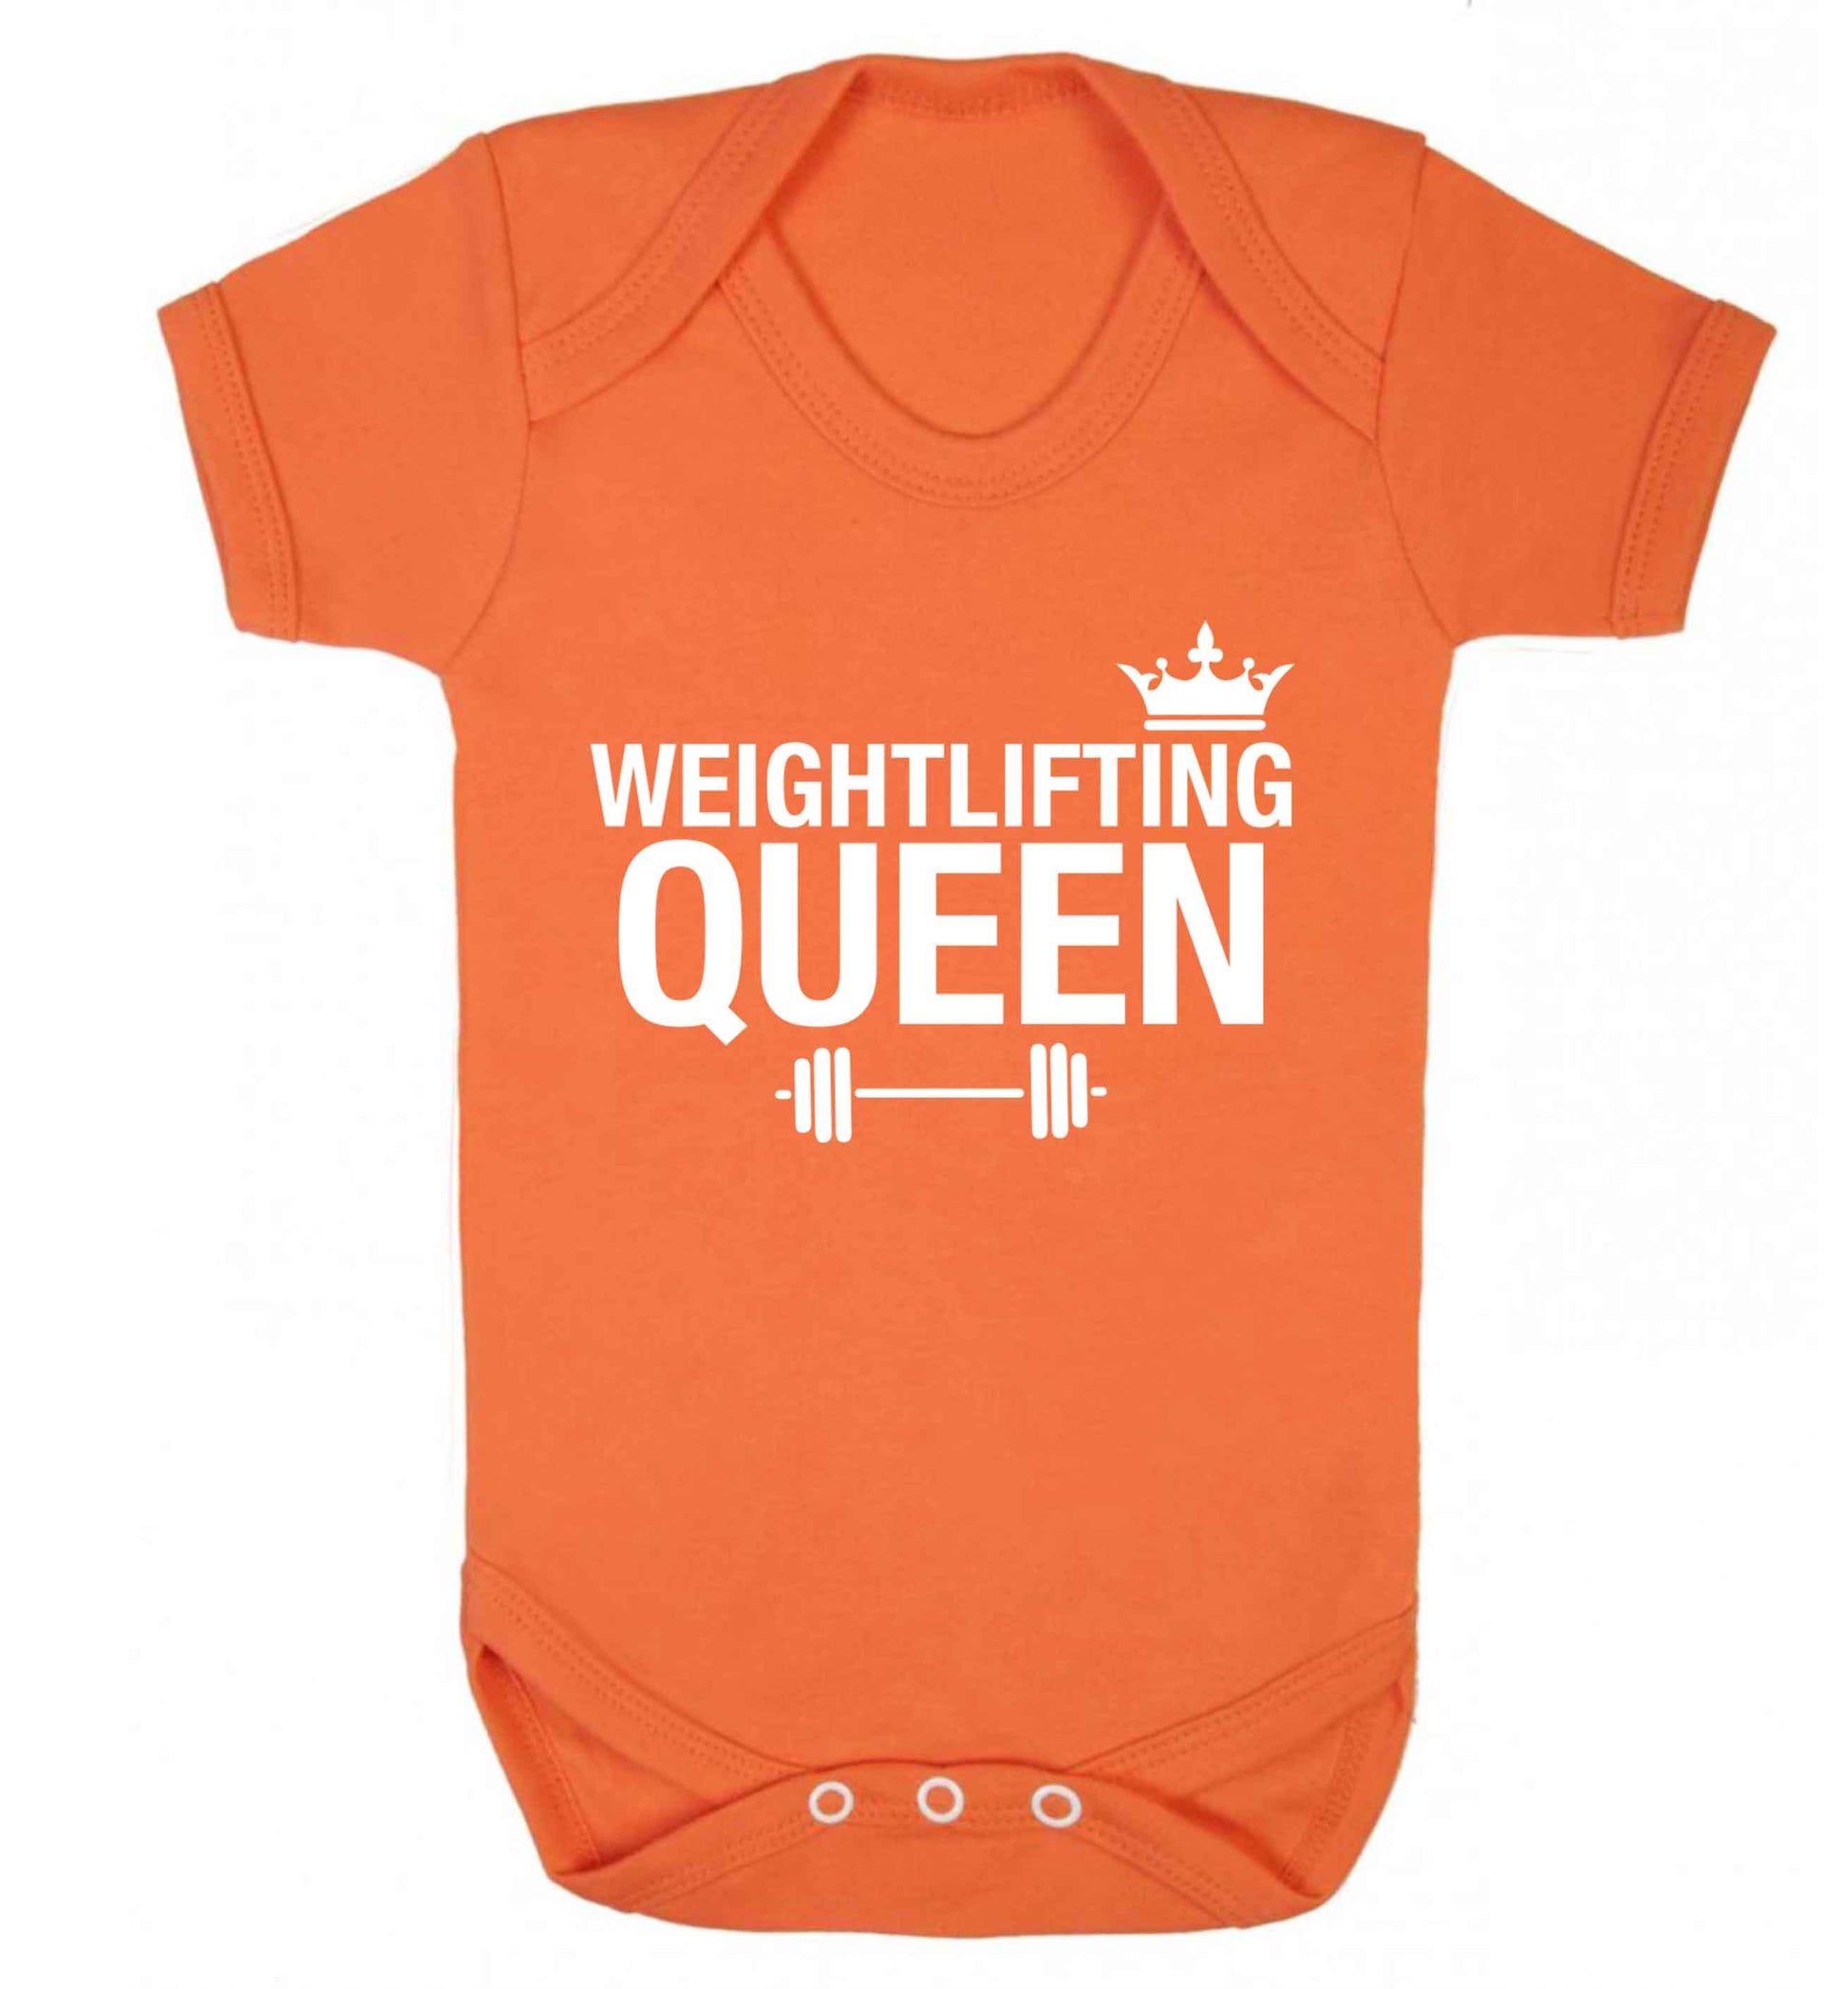 Weightlifting Queen Baby Vest orange 18-24 months